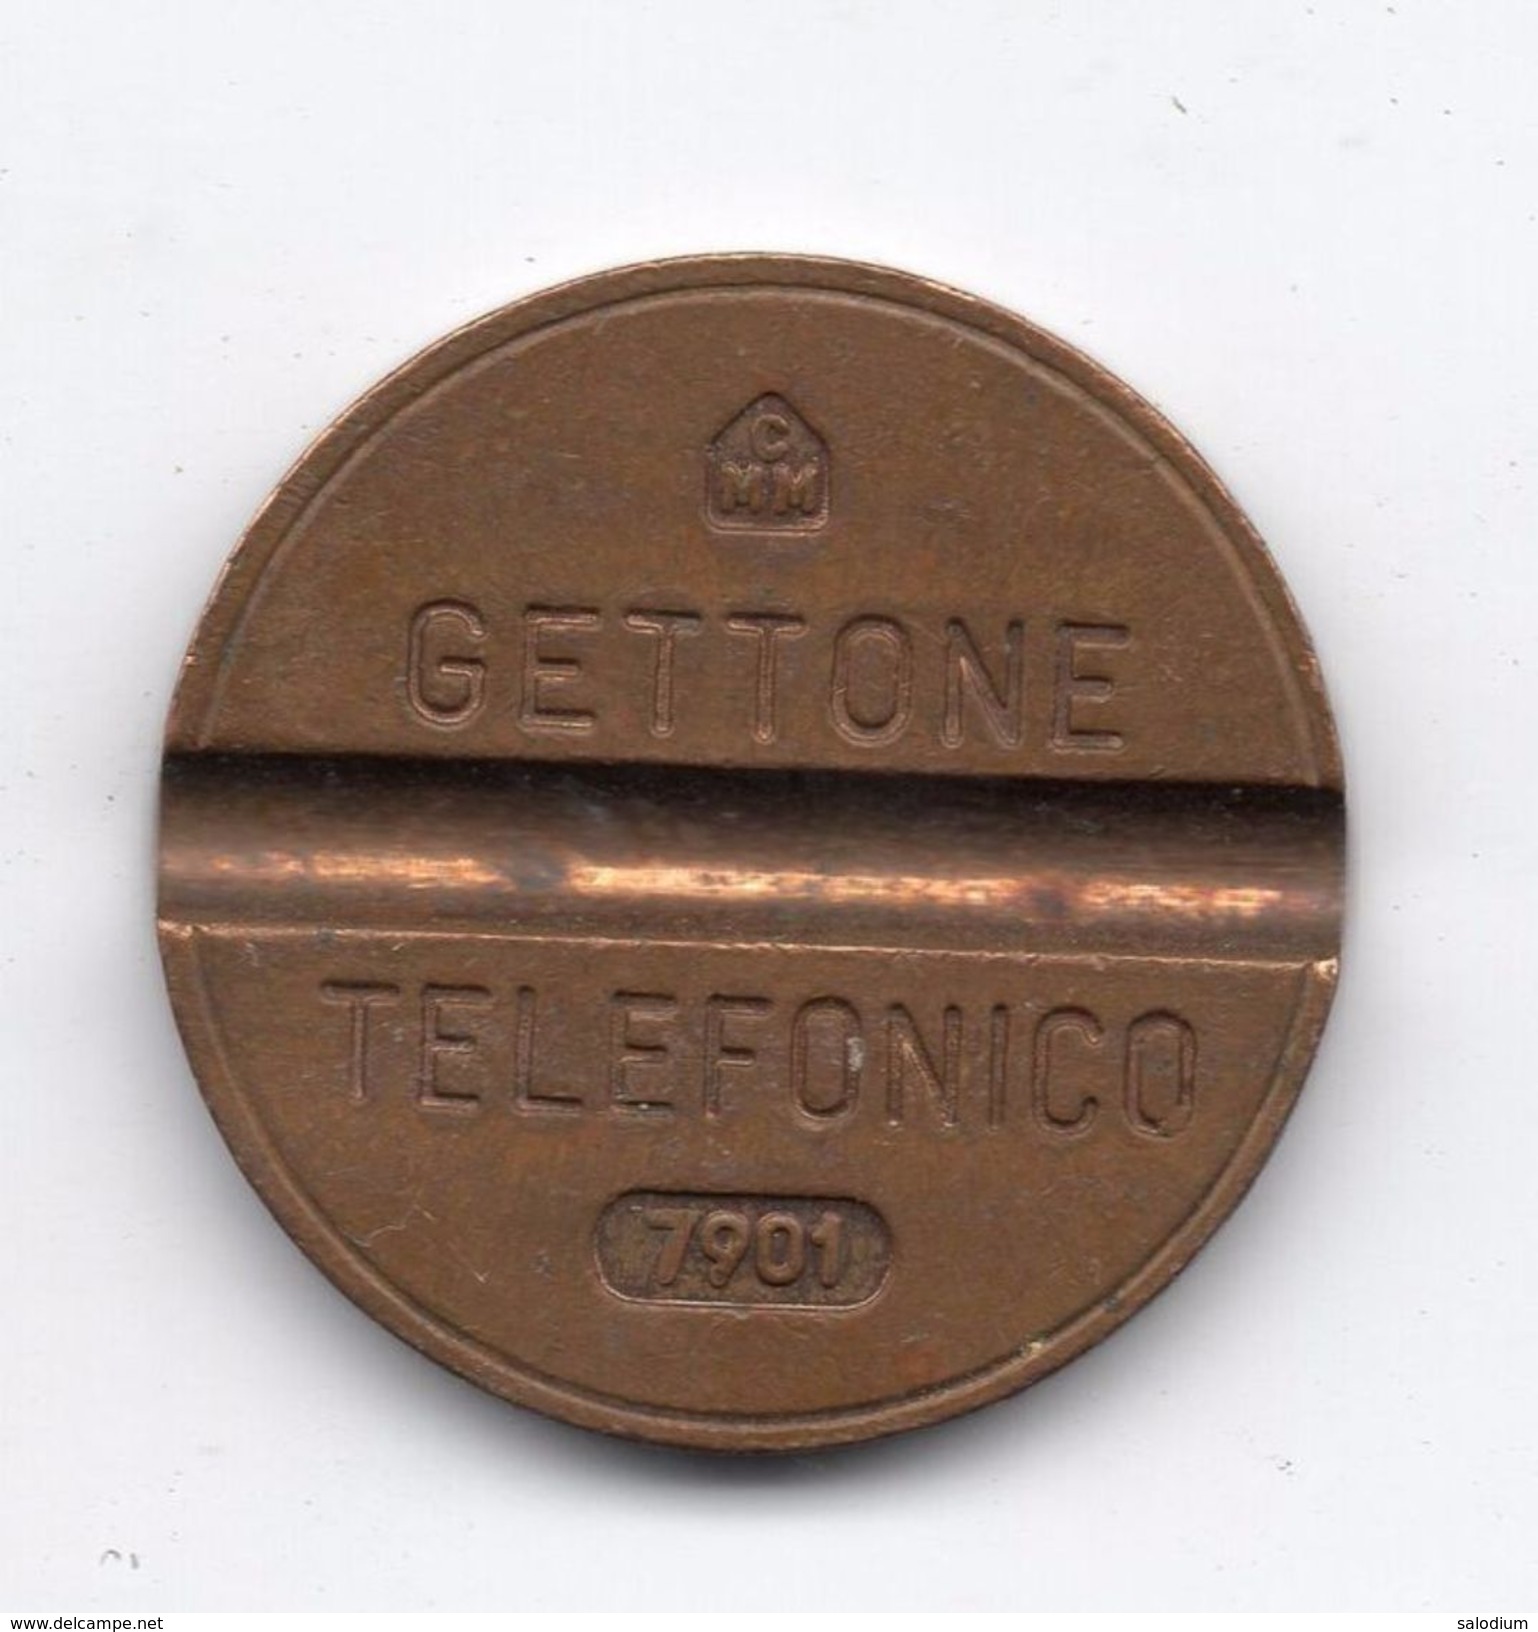 Gettone Telefonico 7901 Token Telephone - (Id-674) - Professionnels/De Société